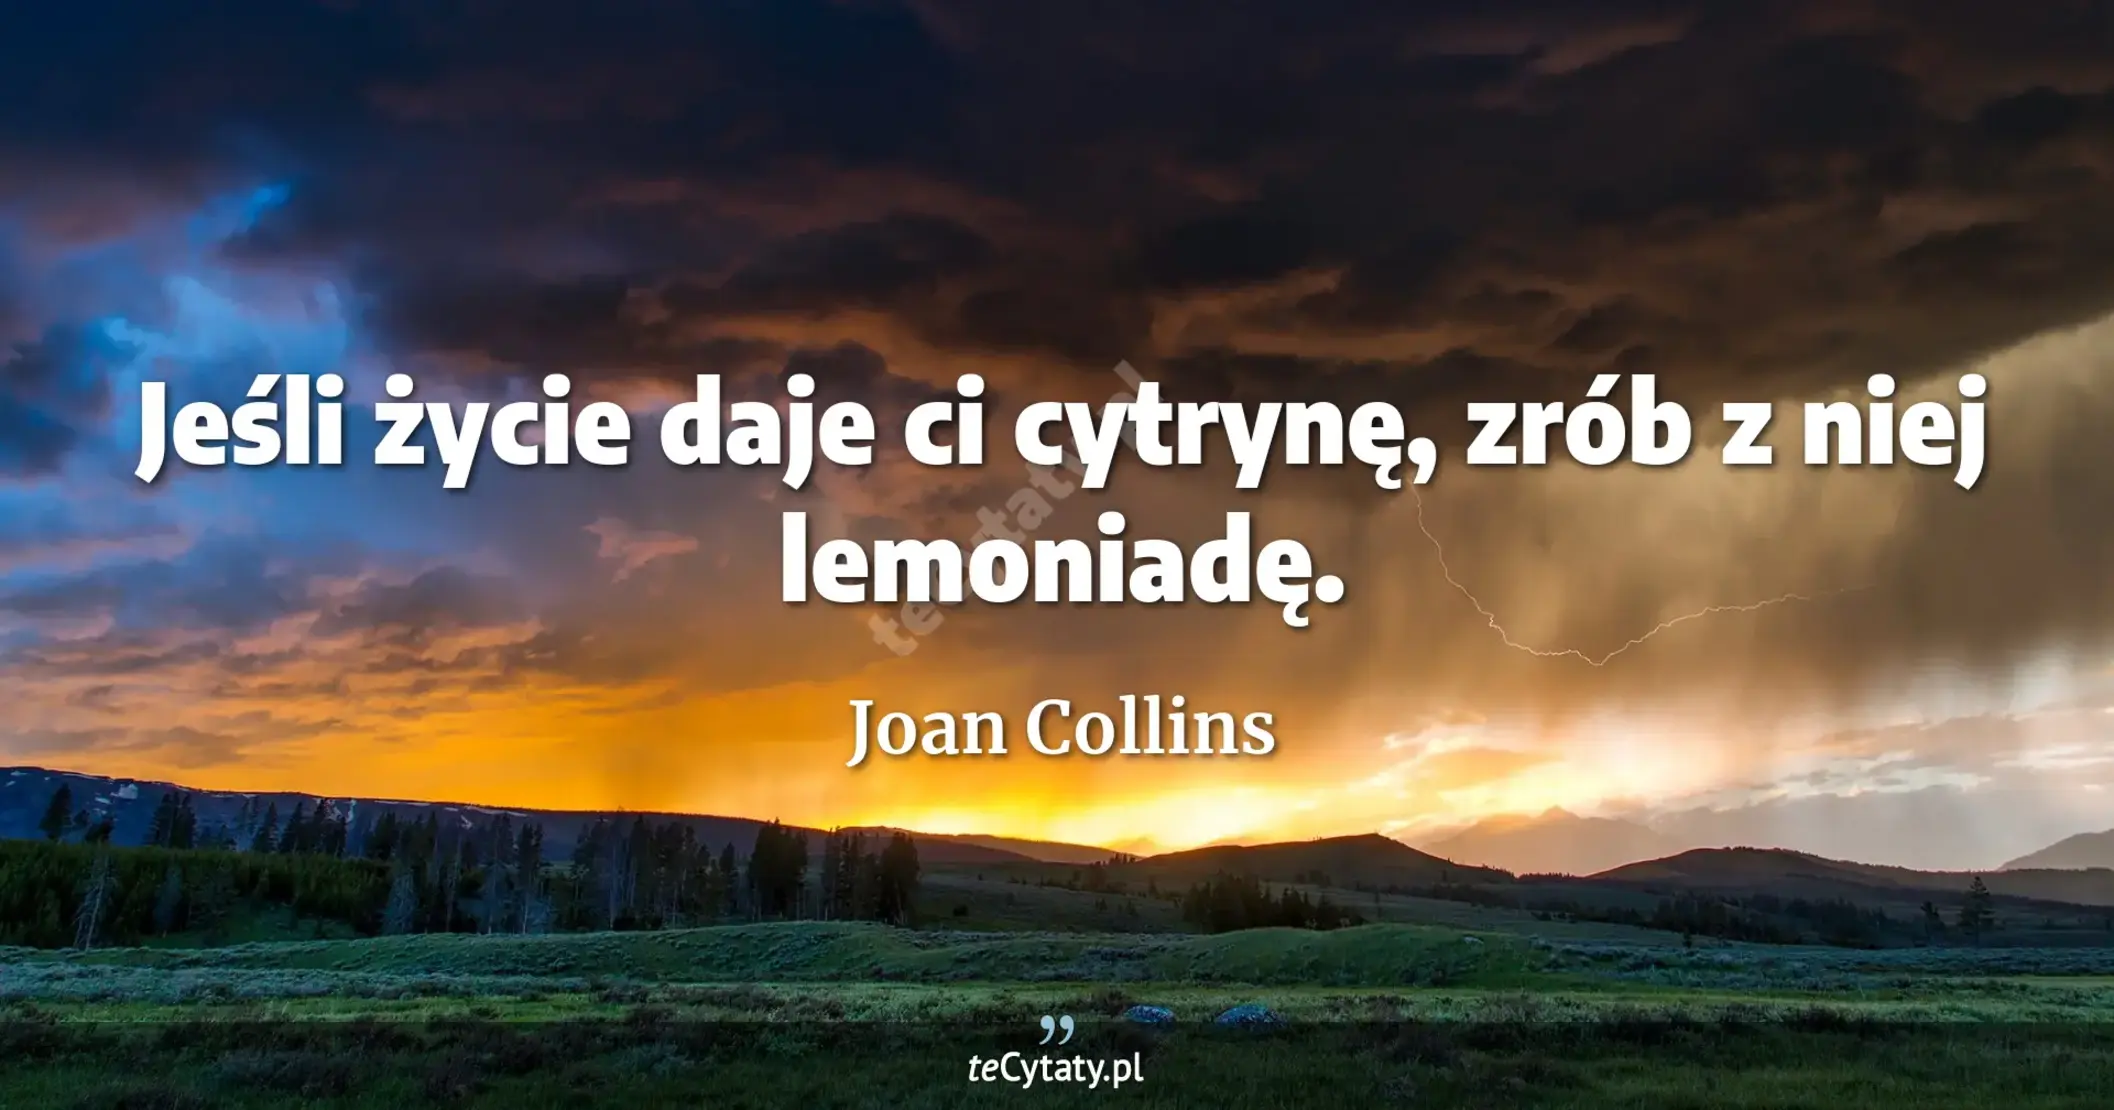 Jeśli życie daje ci cytrynę, zrób z niej lemoniadę. - Joan Collins